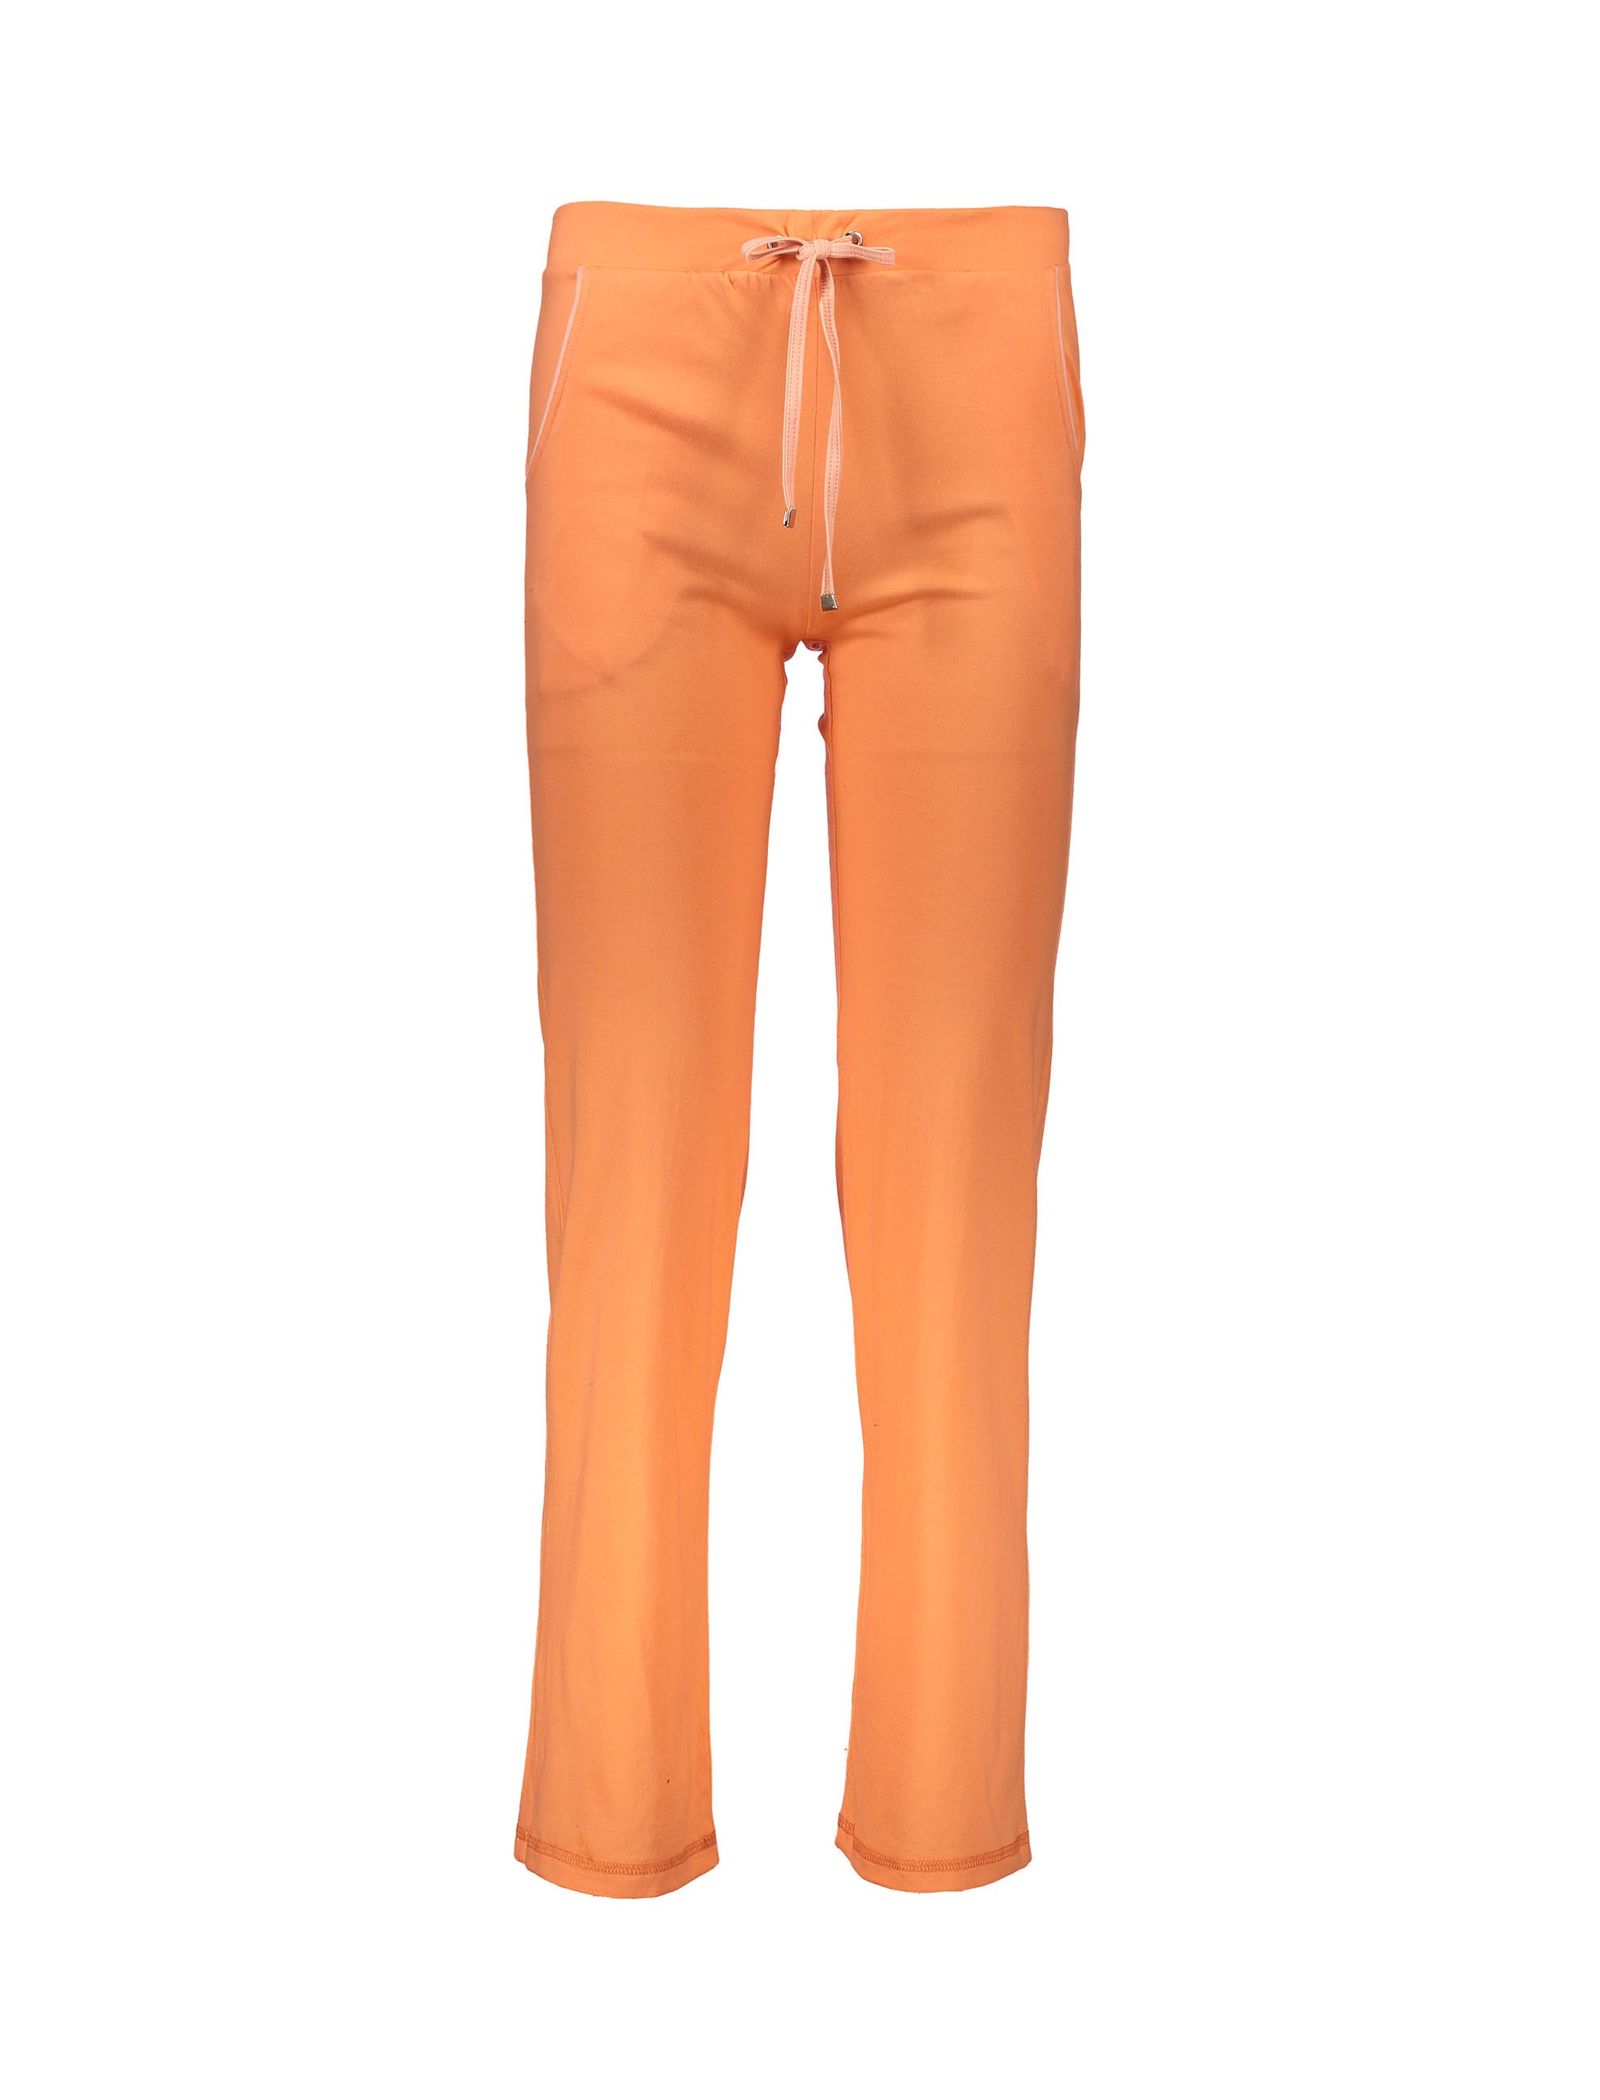 تی شرت و شلوار راحتی نخی زنانه - ناربن - نارنجي - 7